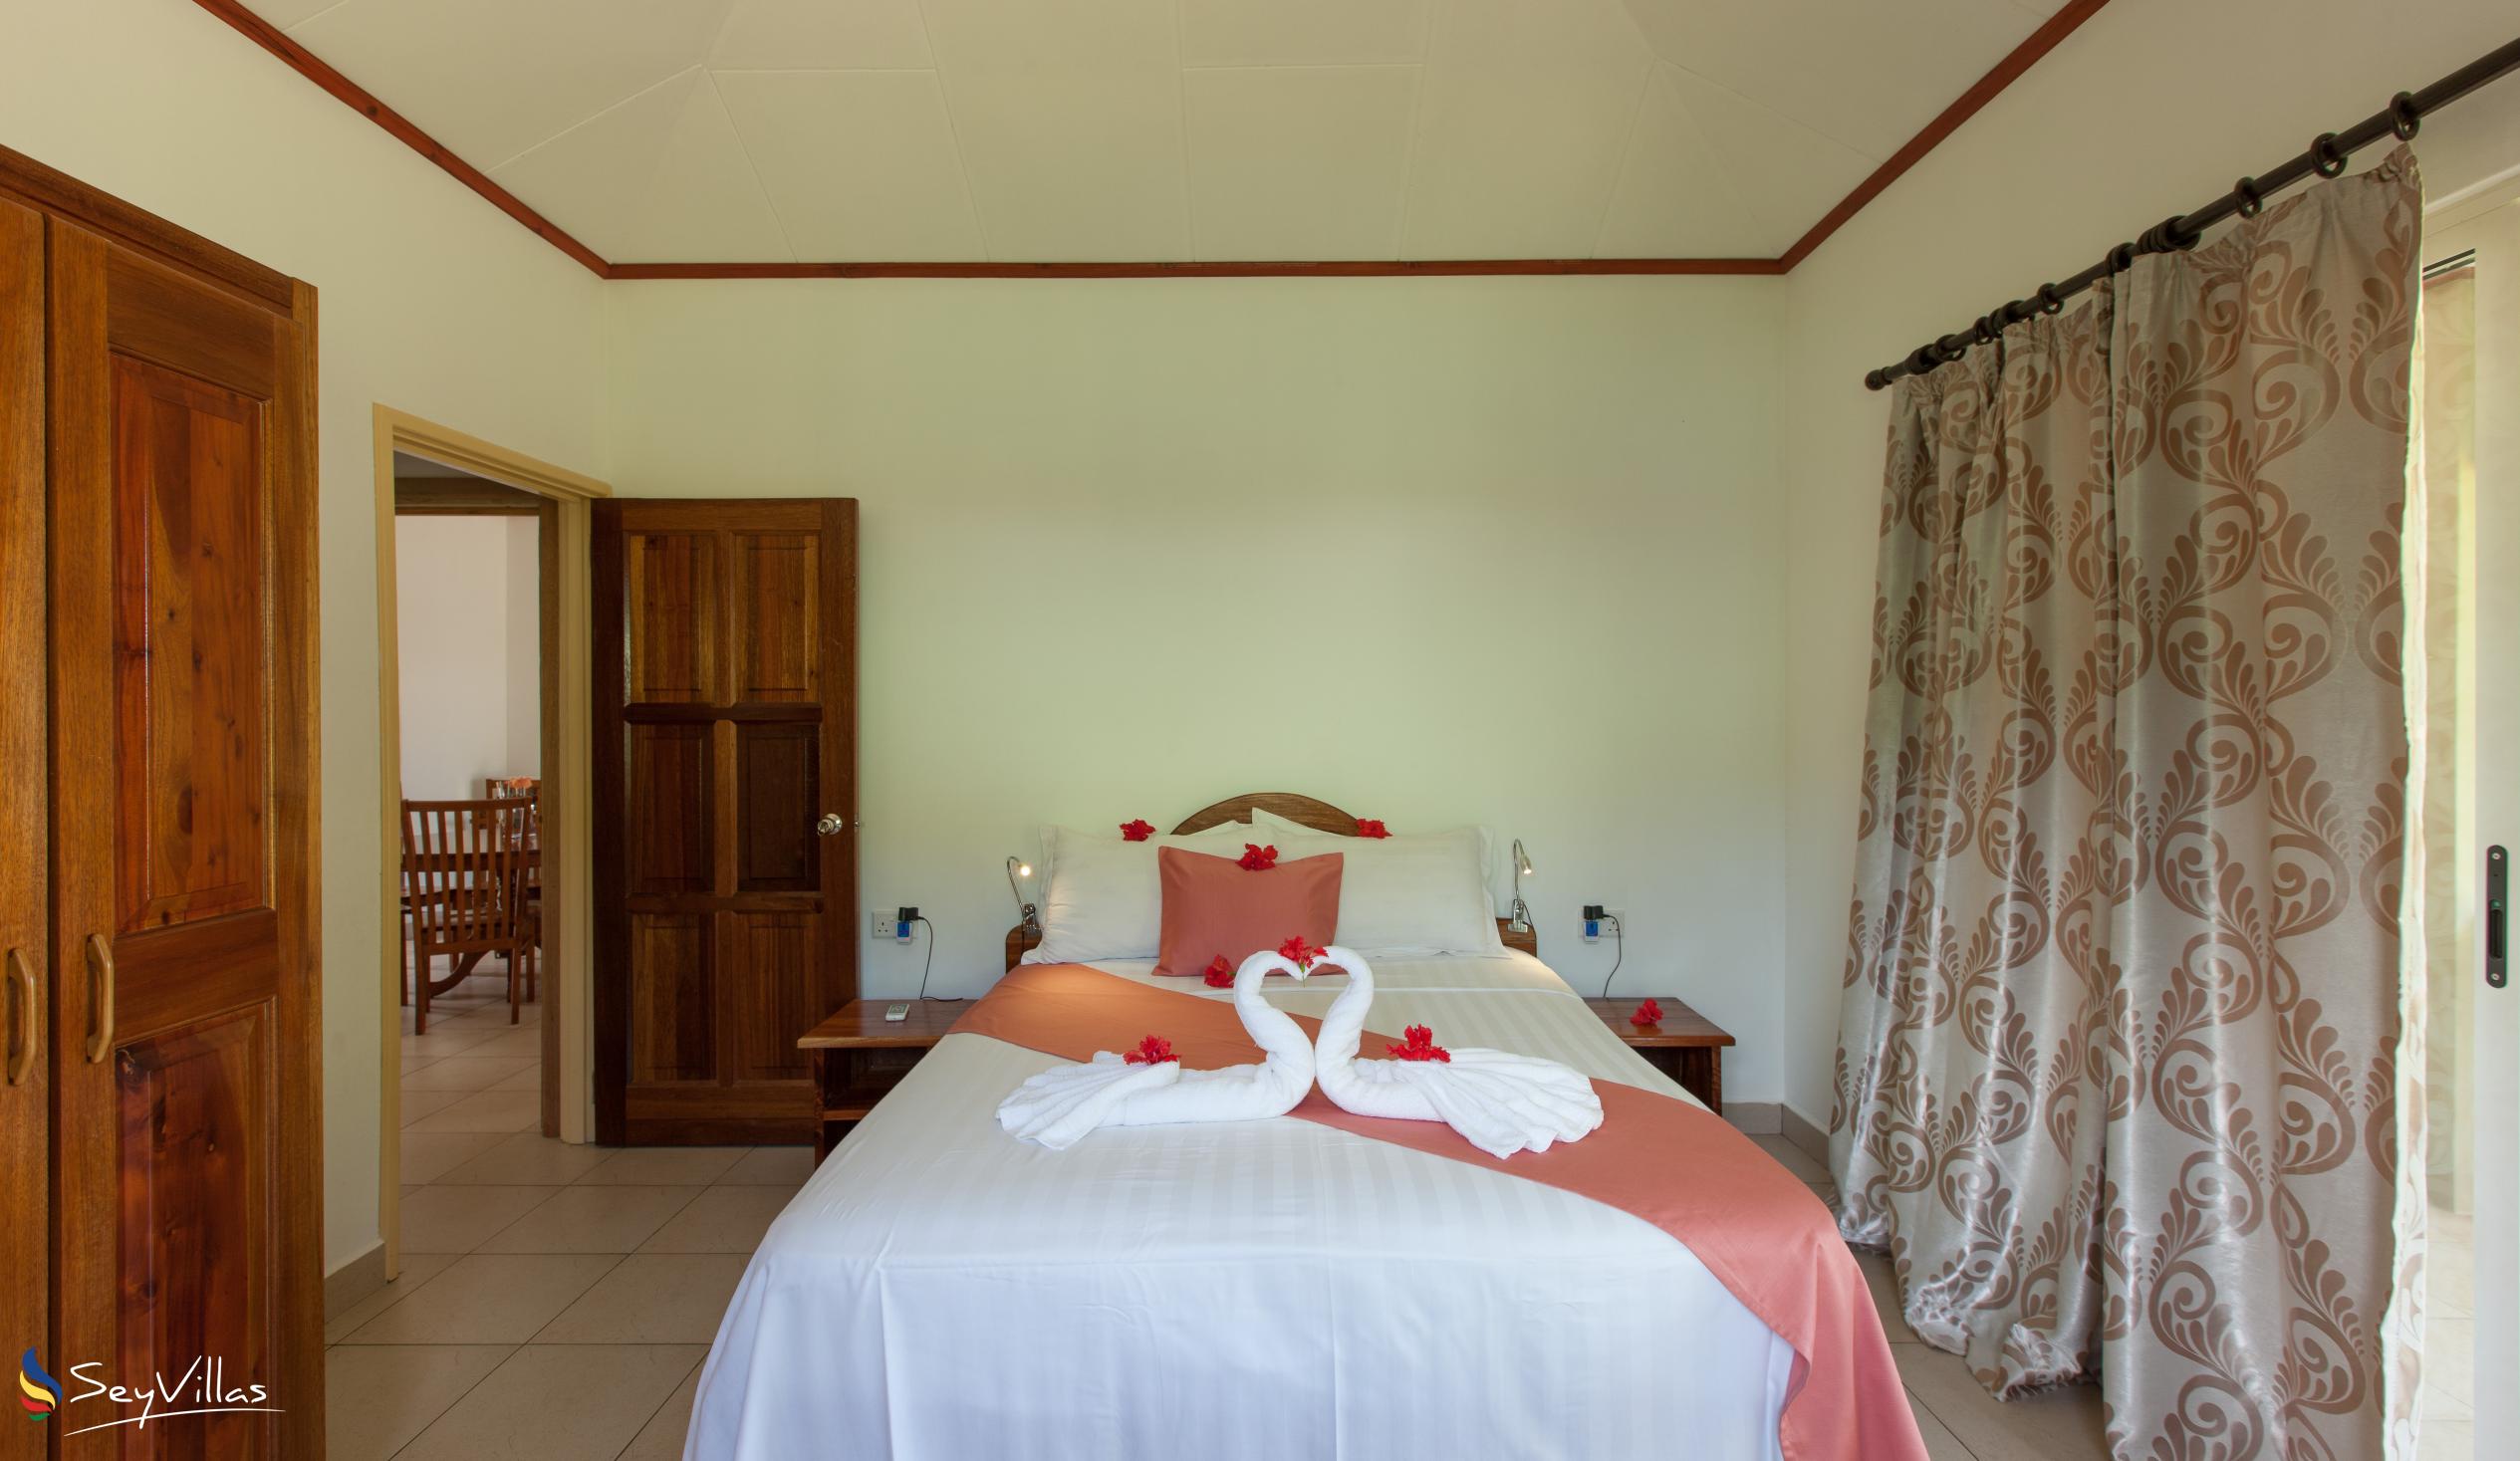 Foto 26: Hostellerie La Digue - Chalet 3 chambres - La Digue (Seychelles)